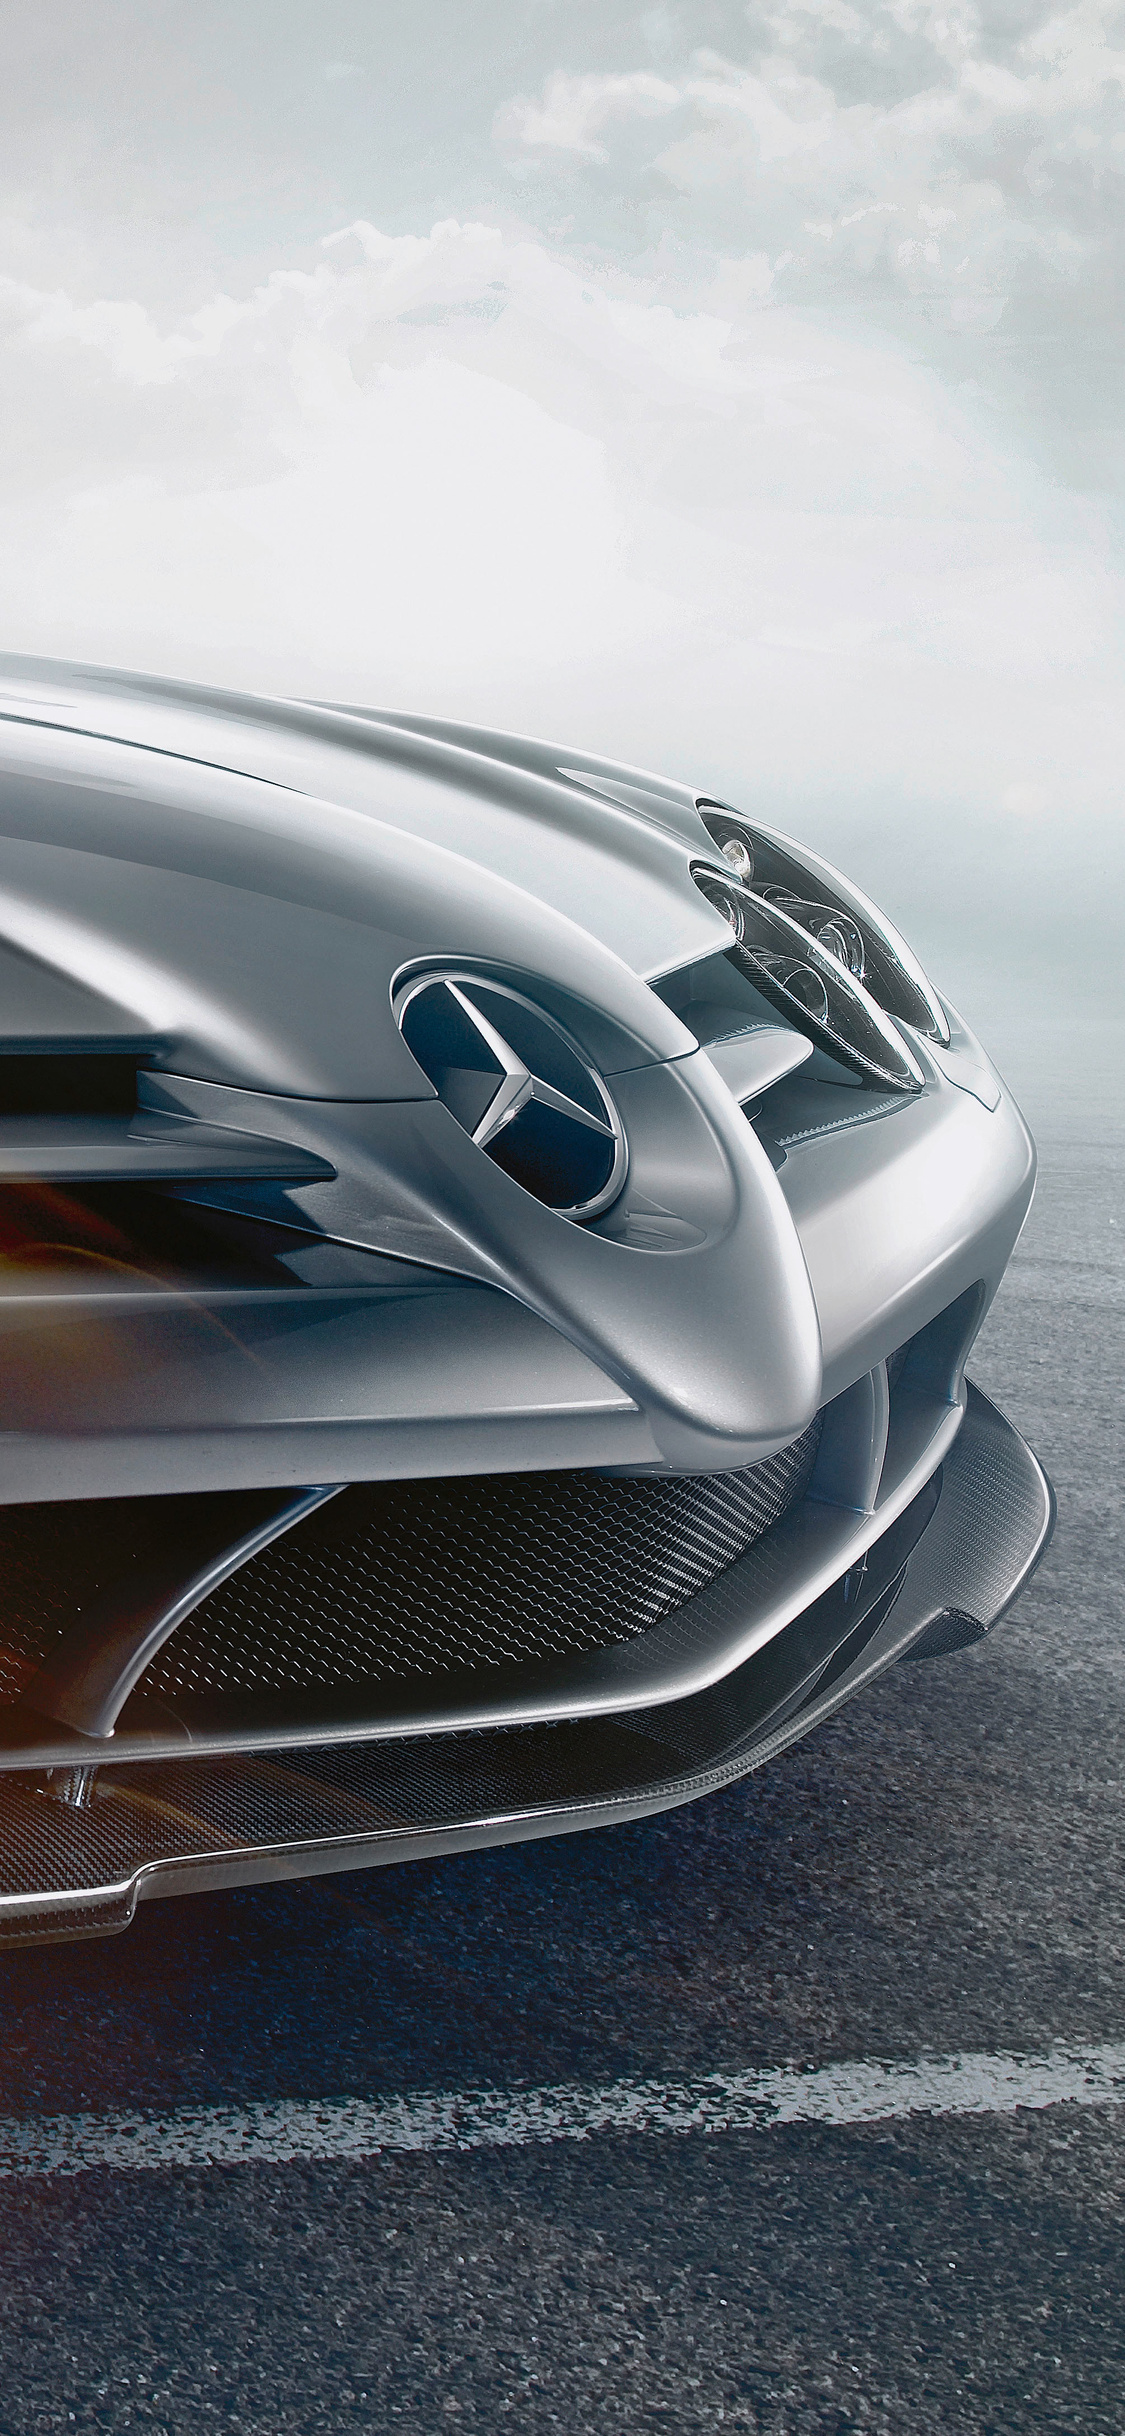 Mercedes-Benz Slr Mclaren Roadster Wallpapers